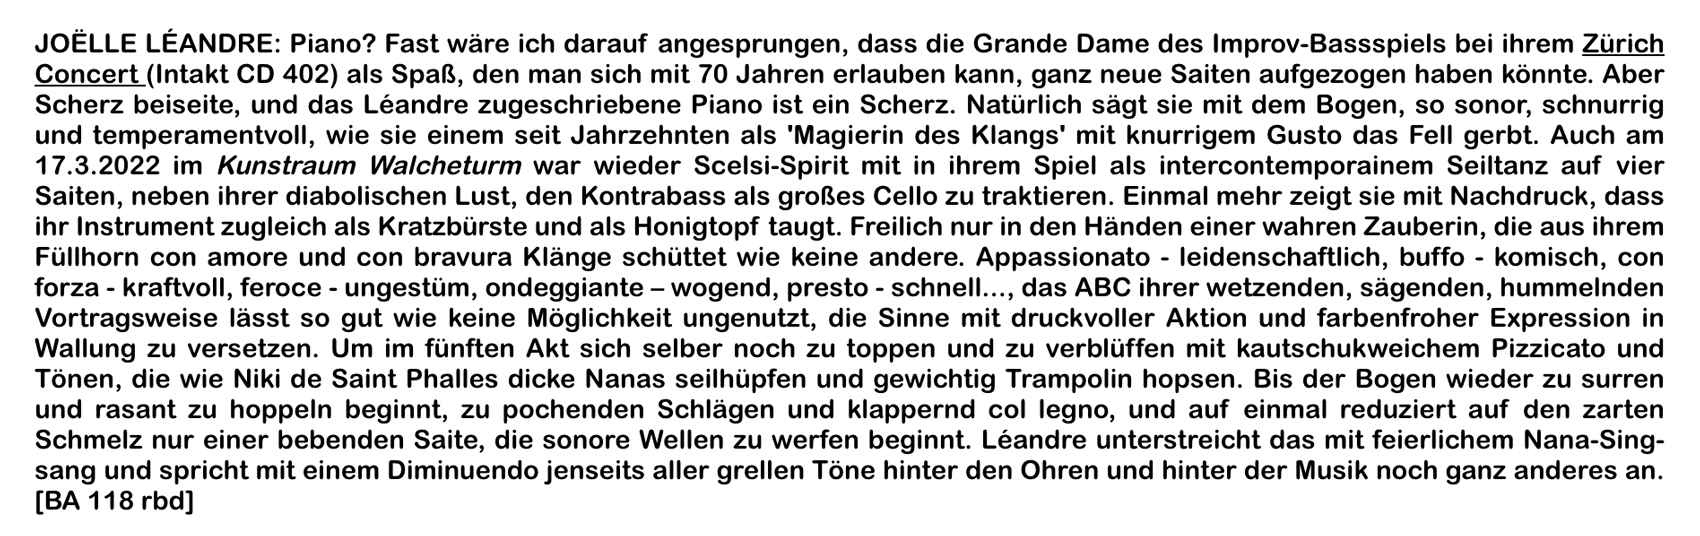 JOELLE LÉANDRE: Piano? Fast wäre ich darauf angesprungen, dass die Grande Dame des Improv-Bassspiels bei ihrem Zürich
										Concert (Intakt CD 402) als Spaß, den man sich mit 70 Jahren erlauben kann, ganz neue Saiten aufgezogen haben könnte. Aber
										Scherz beiseite, und das Léandre zugeschriebene Piano ist ein Scherz.